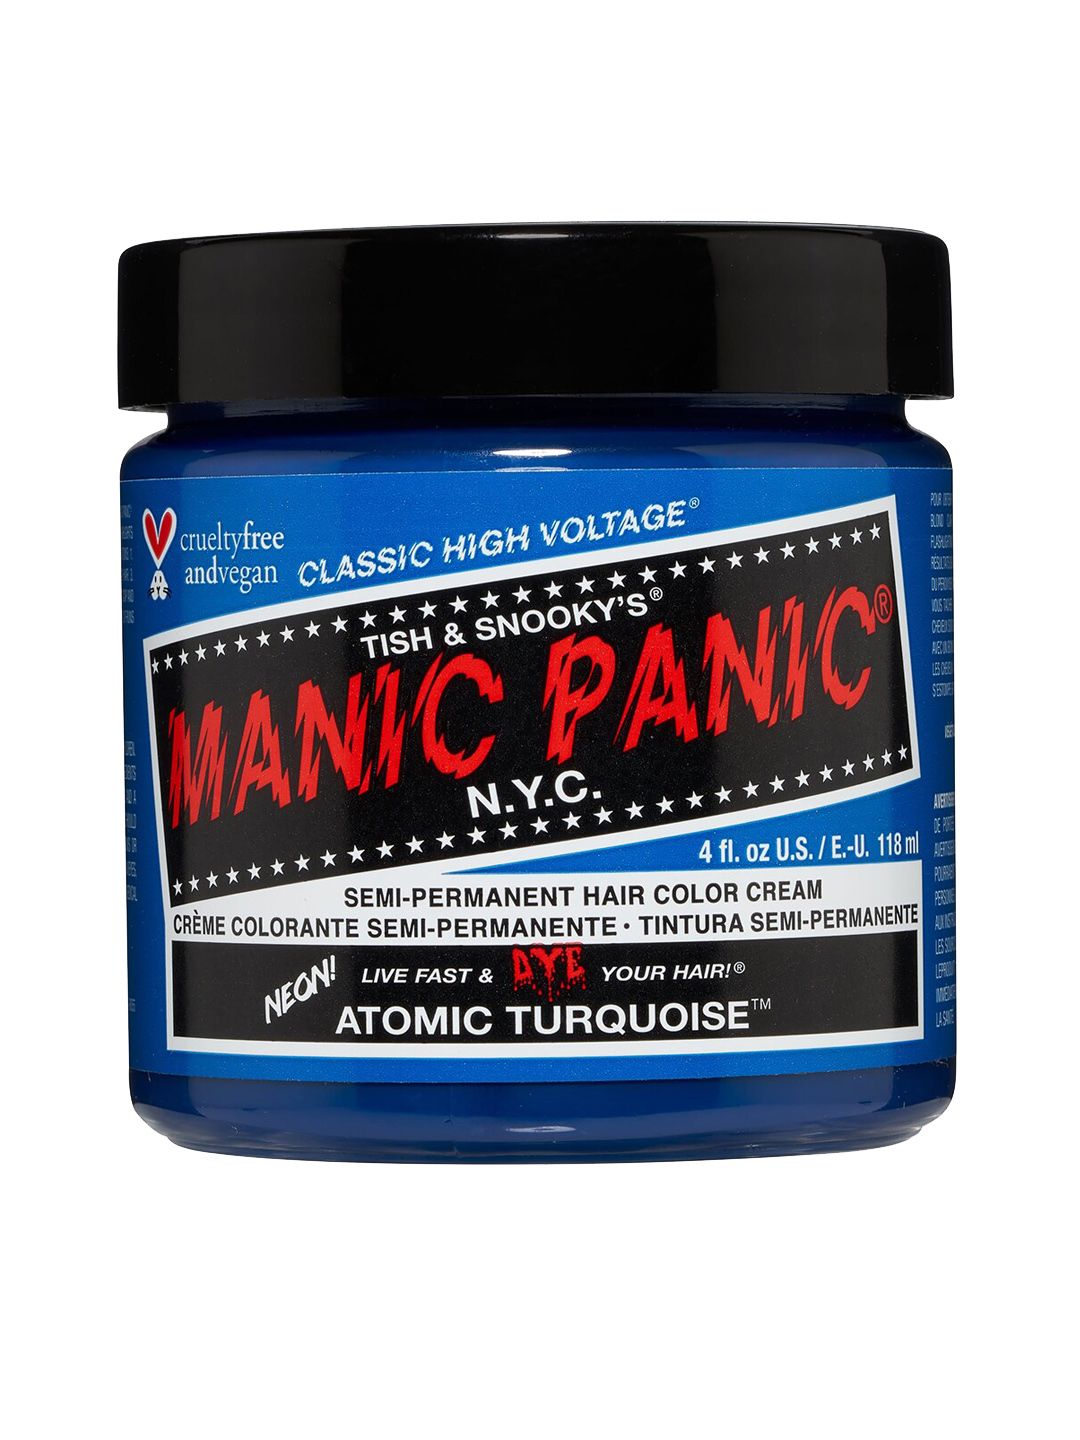 MANIC PANIC Classic High Voltage Semi-Permanent Hair Colour Cream - Atomic Turquoise Price in India